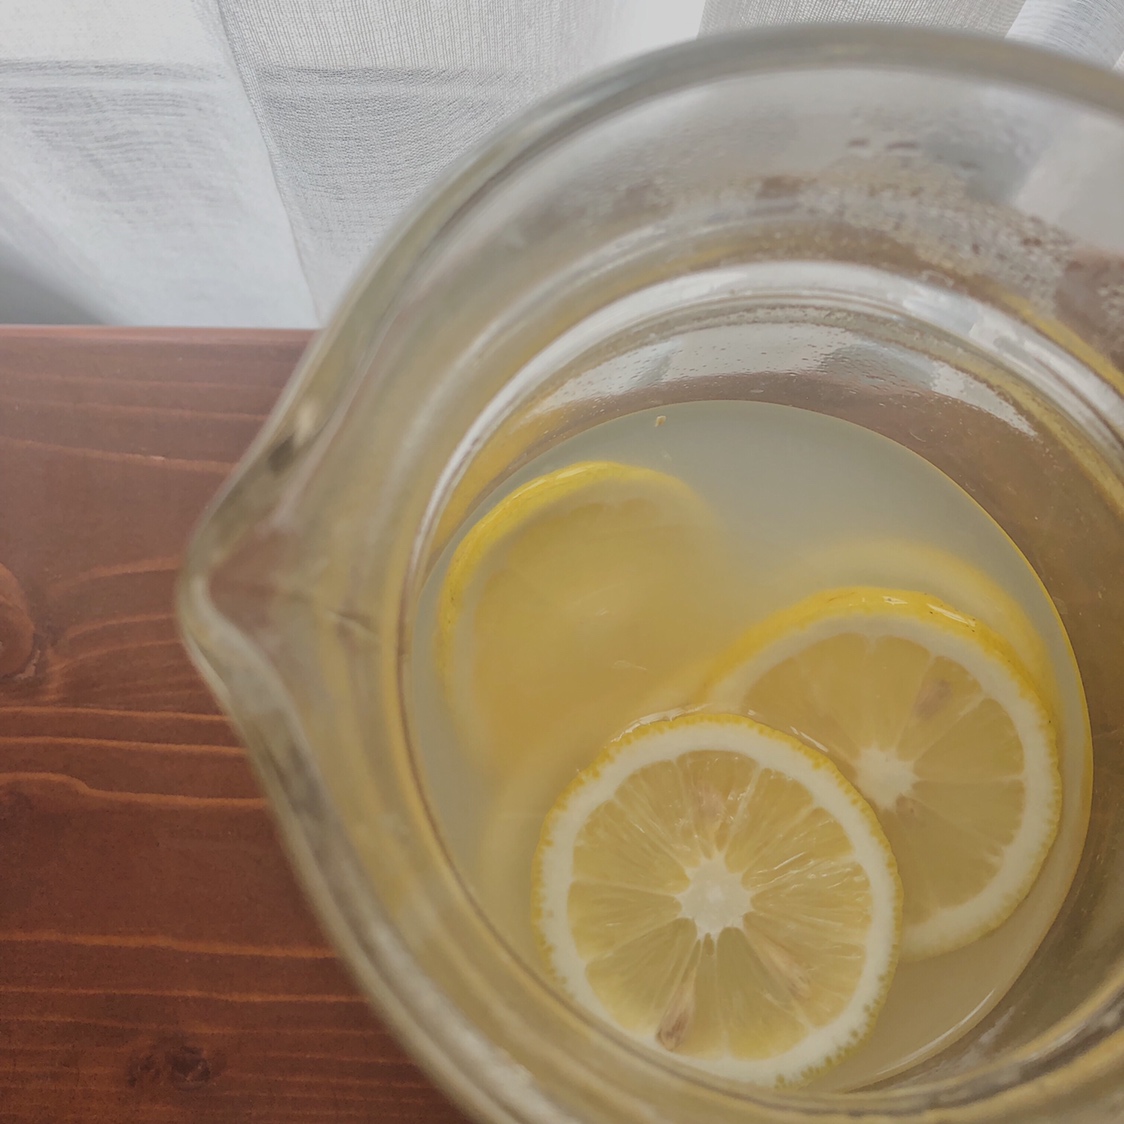 柠檬薏米水